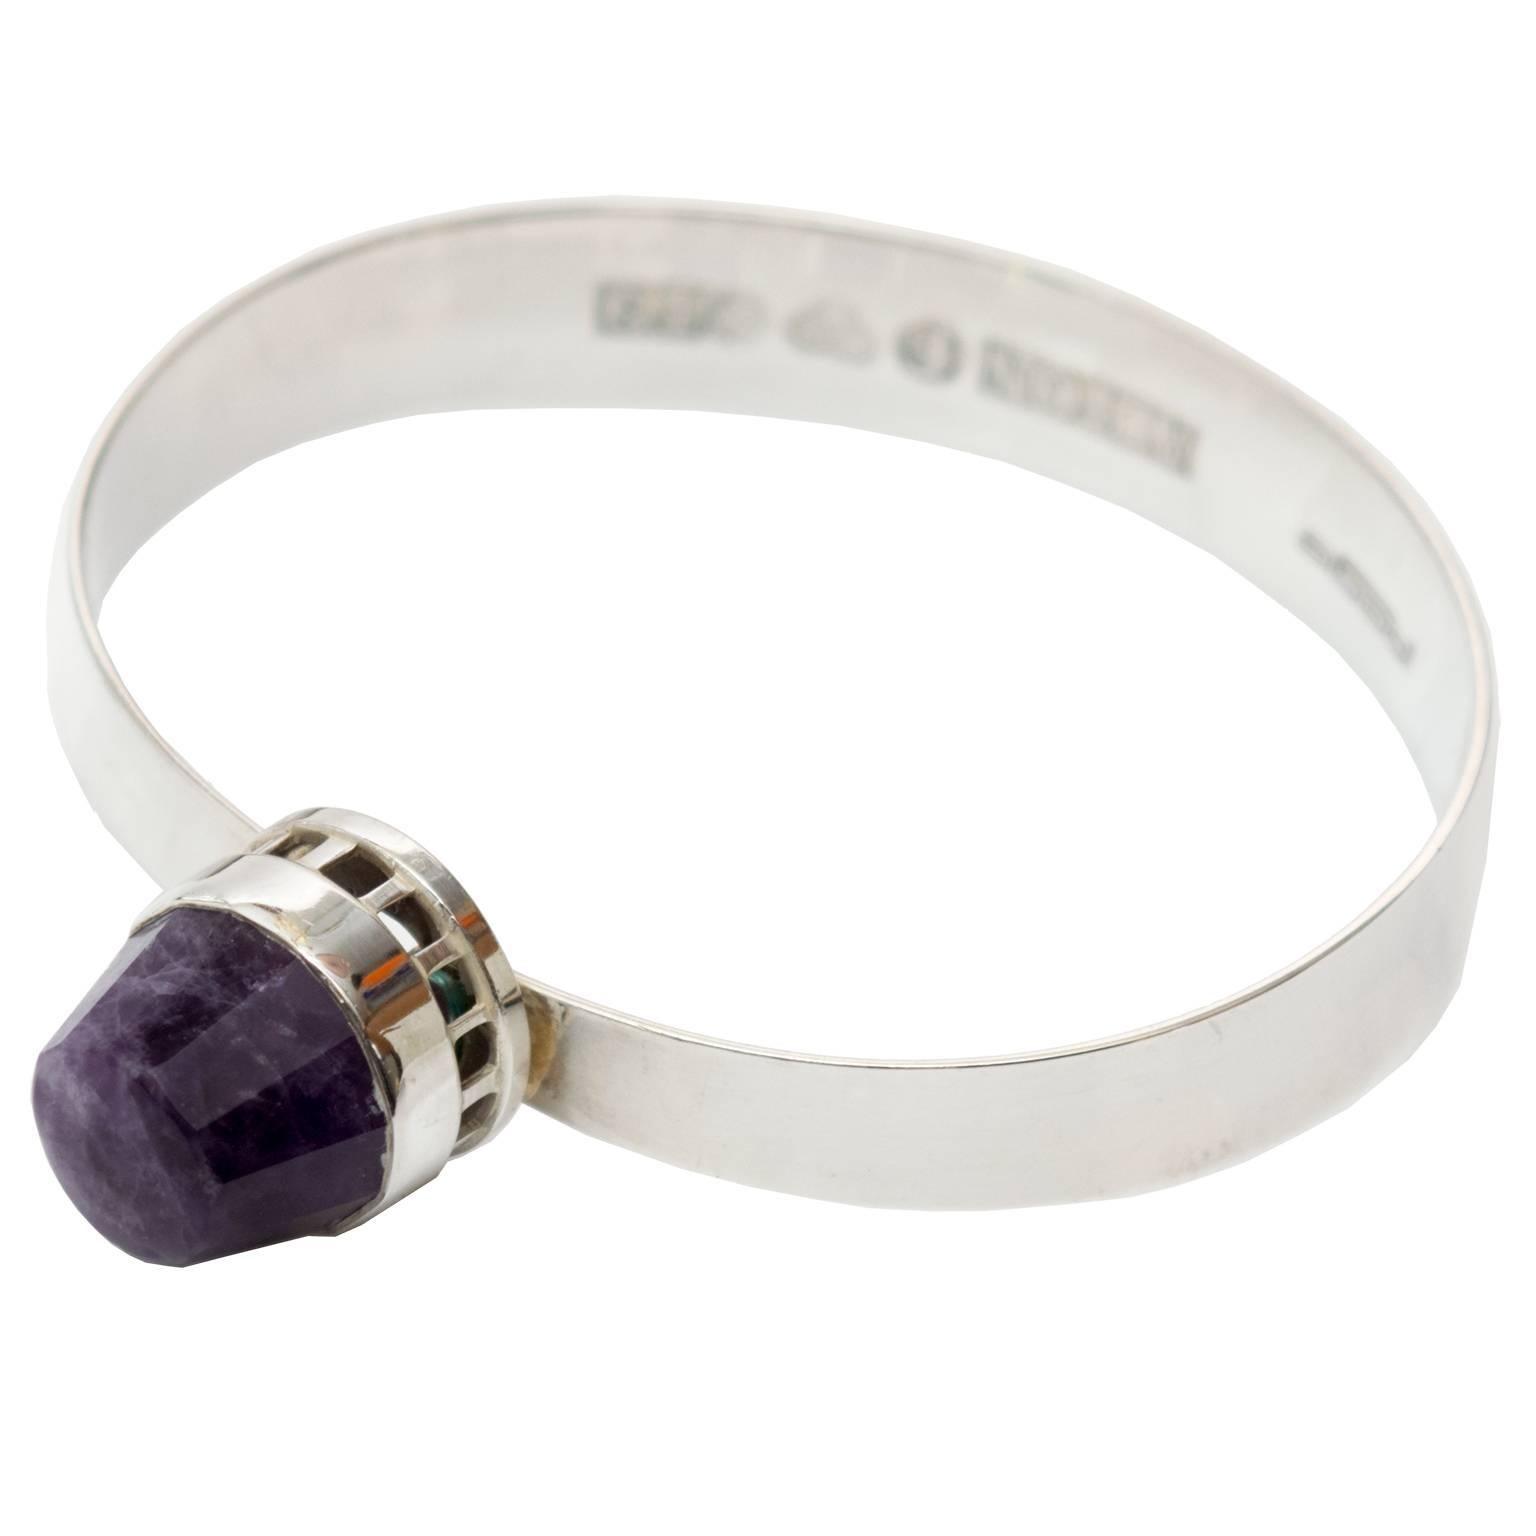 Bracelet moderne scandinave en argent sterling avec pierre violette de Pege, Alton